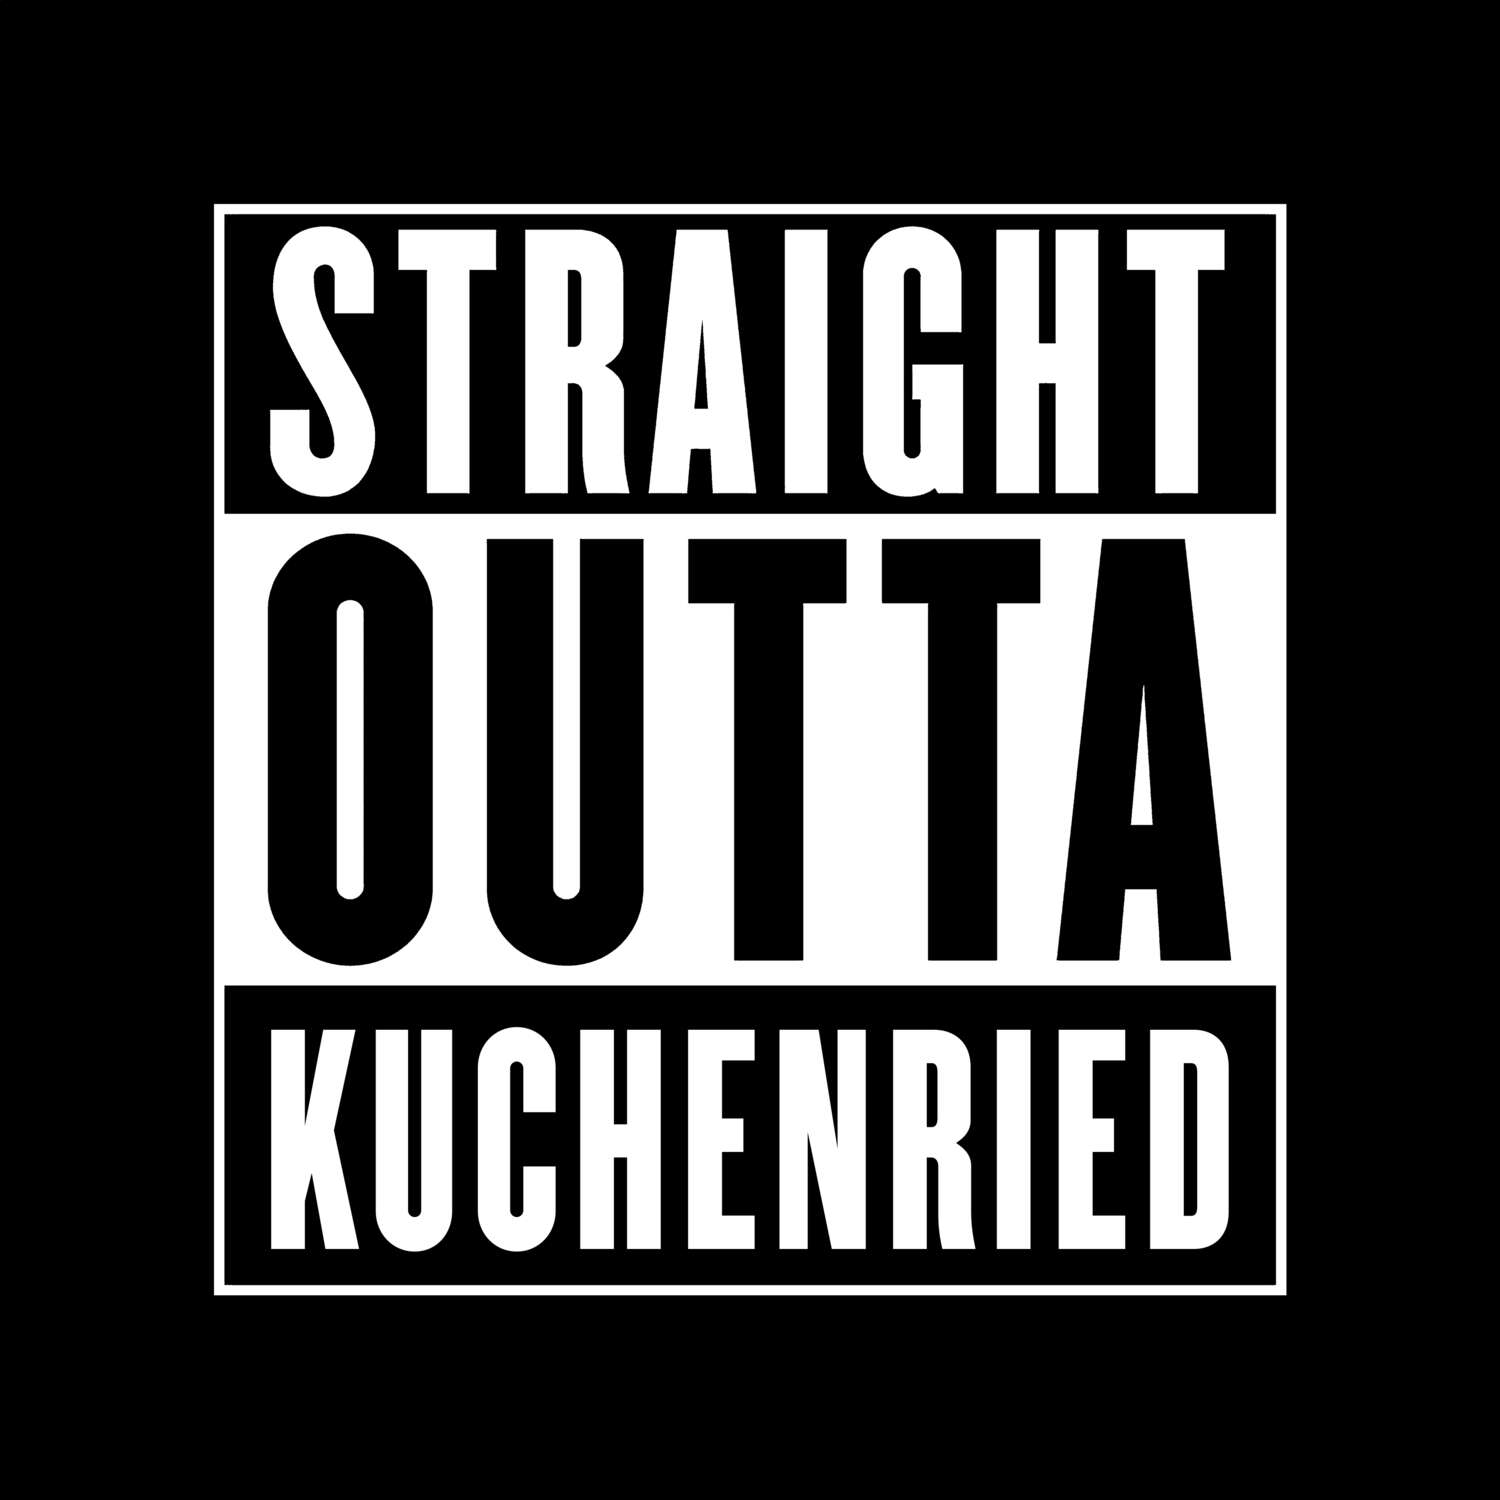 Kuchenried T-Shirt »Straight Outta«